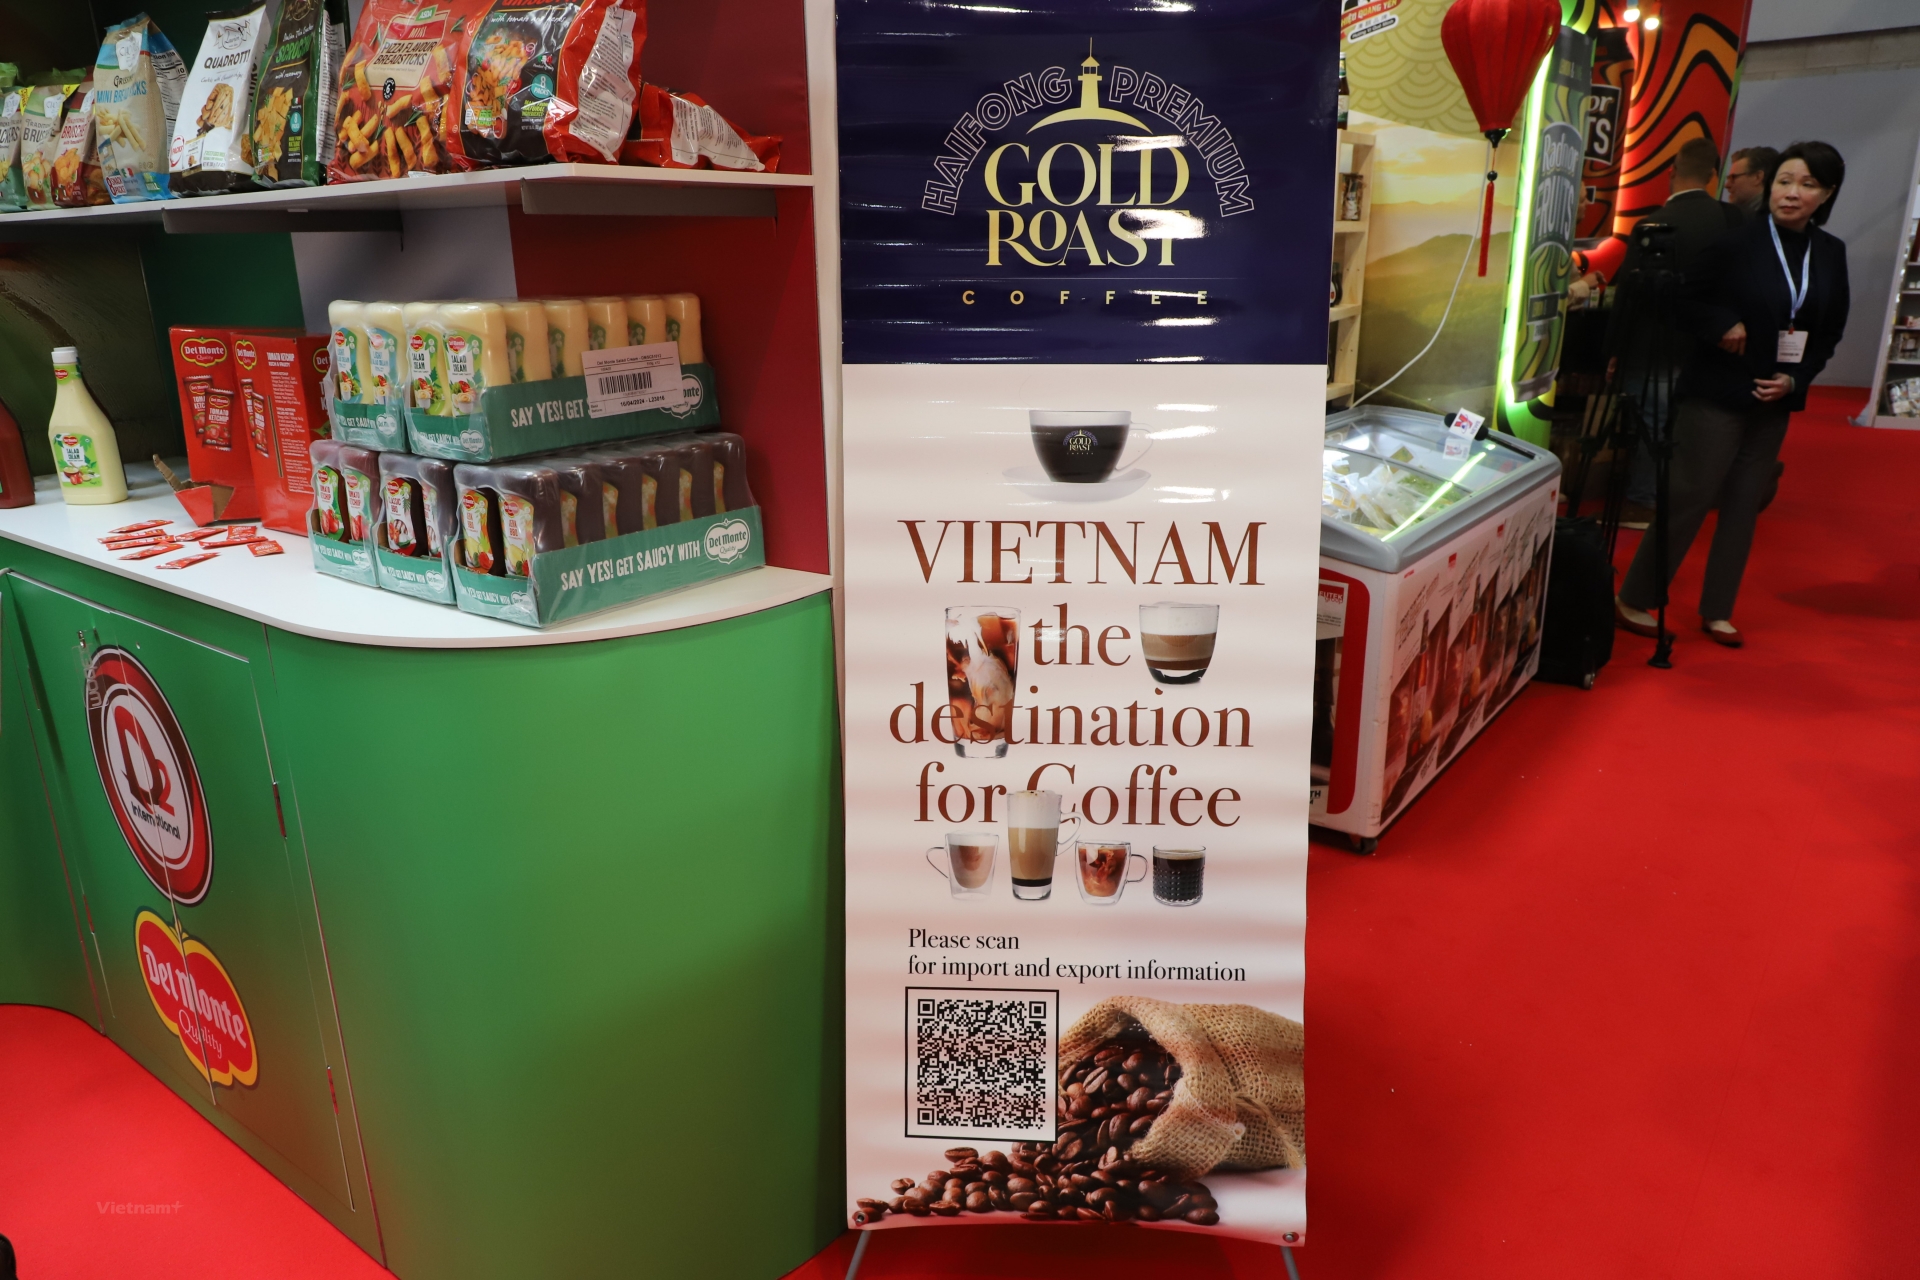 越南咖啡品牌吸引了顾客的关注。